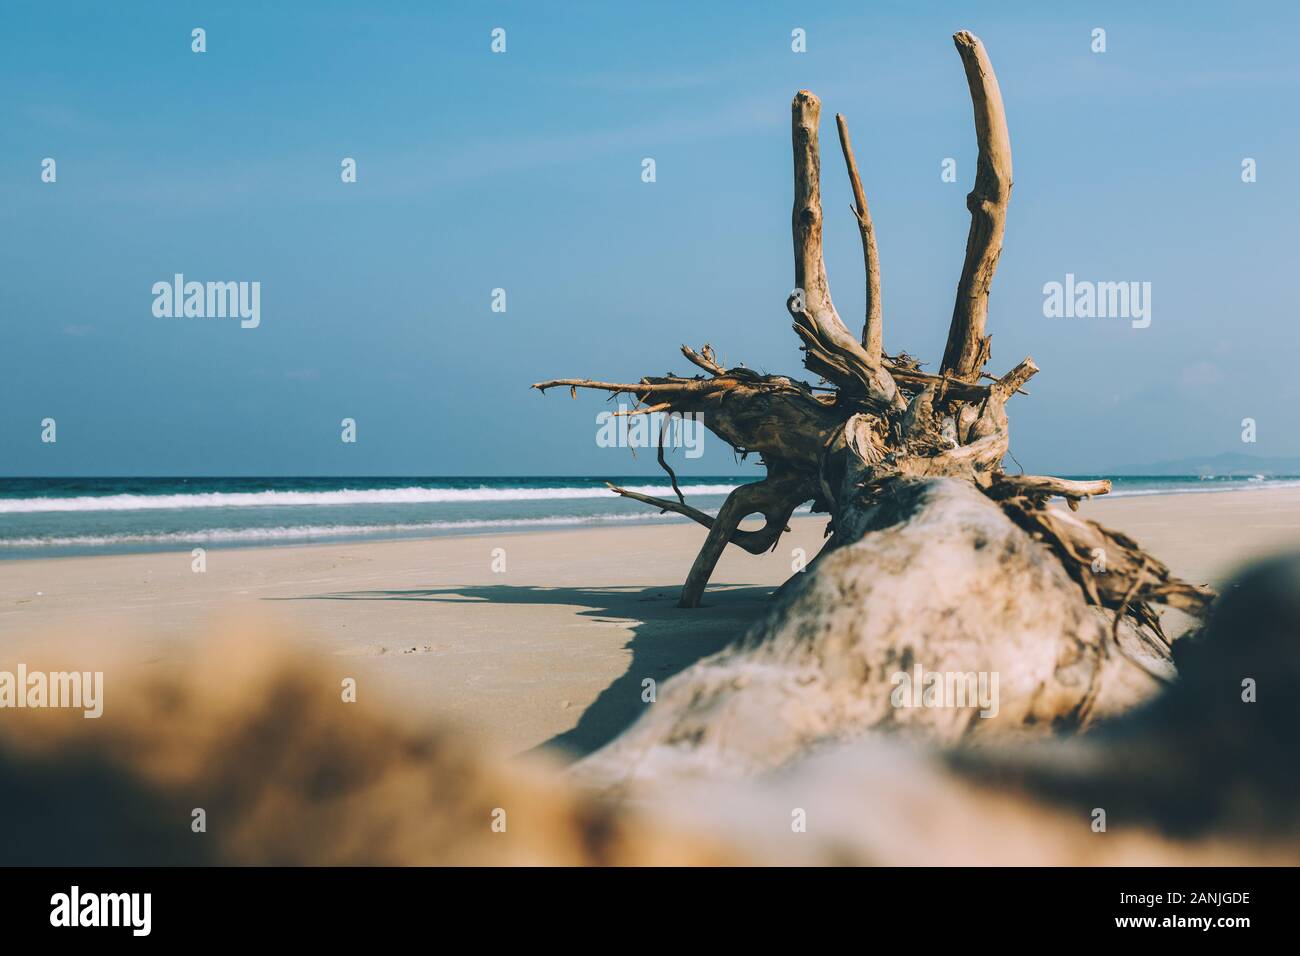 Albero secco, la radice si trova sulla riva di una spiaggia sabbiosa spiaggia vuota, spiaggia vuota, piccole onde, cielo blu, sfondo Foto Stock